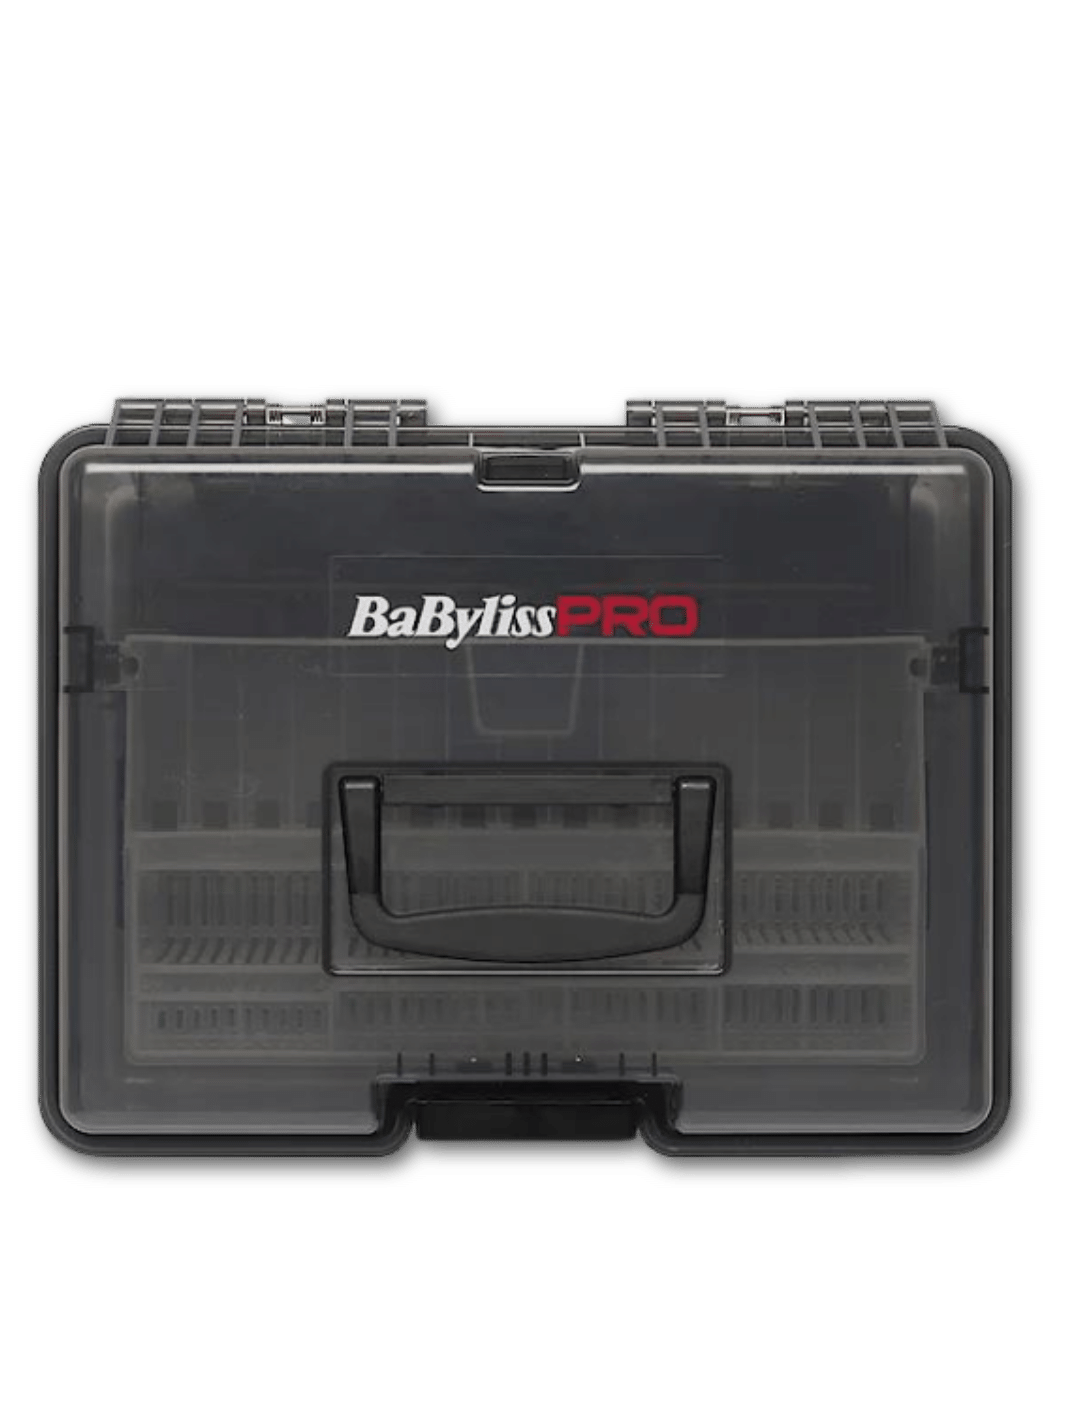 Babyliss PRO Barbersonic Desinfektions-Box mit Schallvibrationsreinigung, verfügbar bei Phullcutz, ideal für die professionelle Reinigung und Desinfektion von Friseurwerkzeugen.